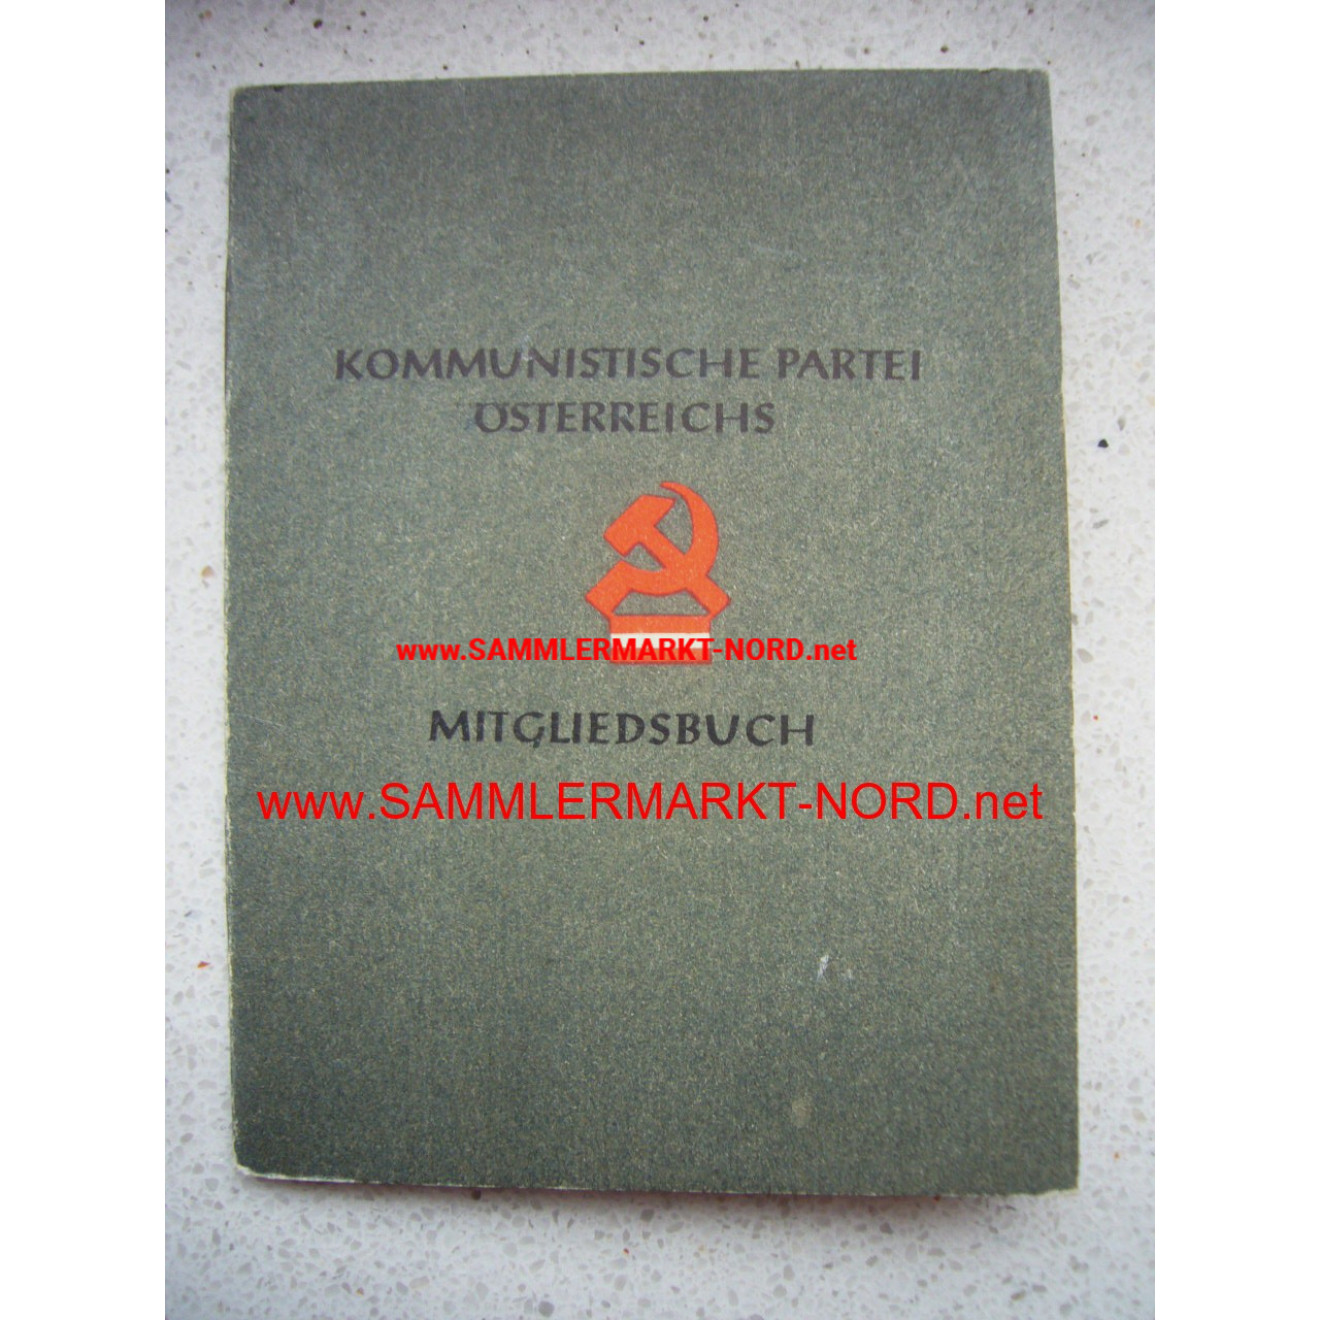 KPÖ Kommunistische Partei Österreichs - Mitgliedsbuch